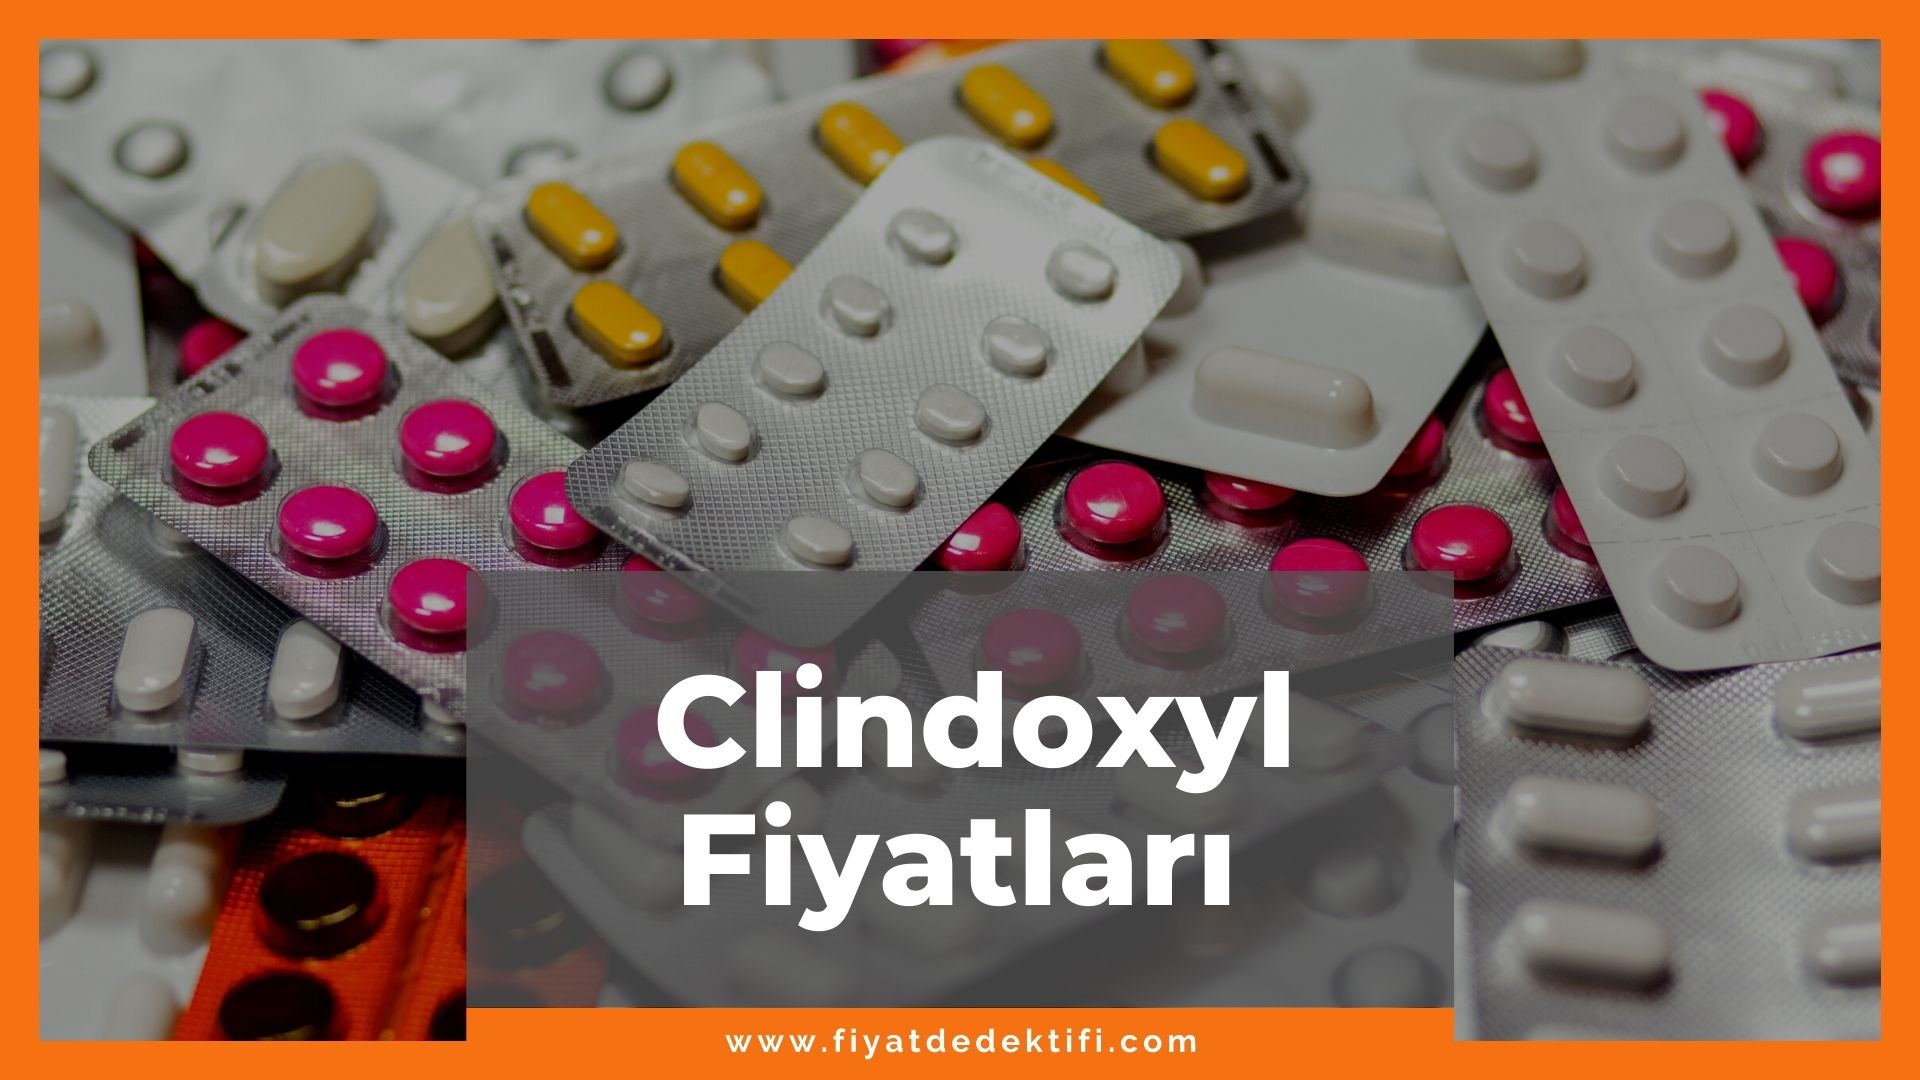 Clindoxyl Fiyat 2021, Clindoxyl Fiyatı, Clindoxyl Krem Fiyatı, clindoxyl zamlandı mı, clindoxyl zamlı fiyat ne kadar